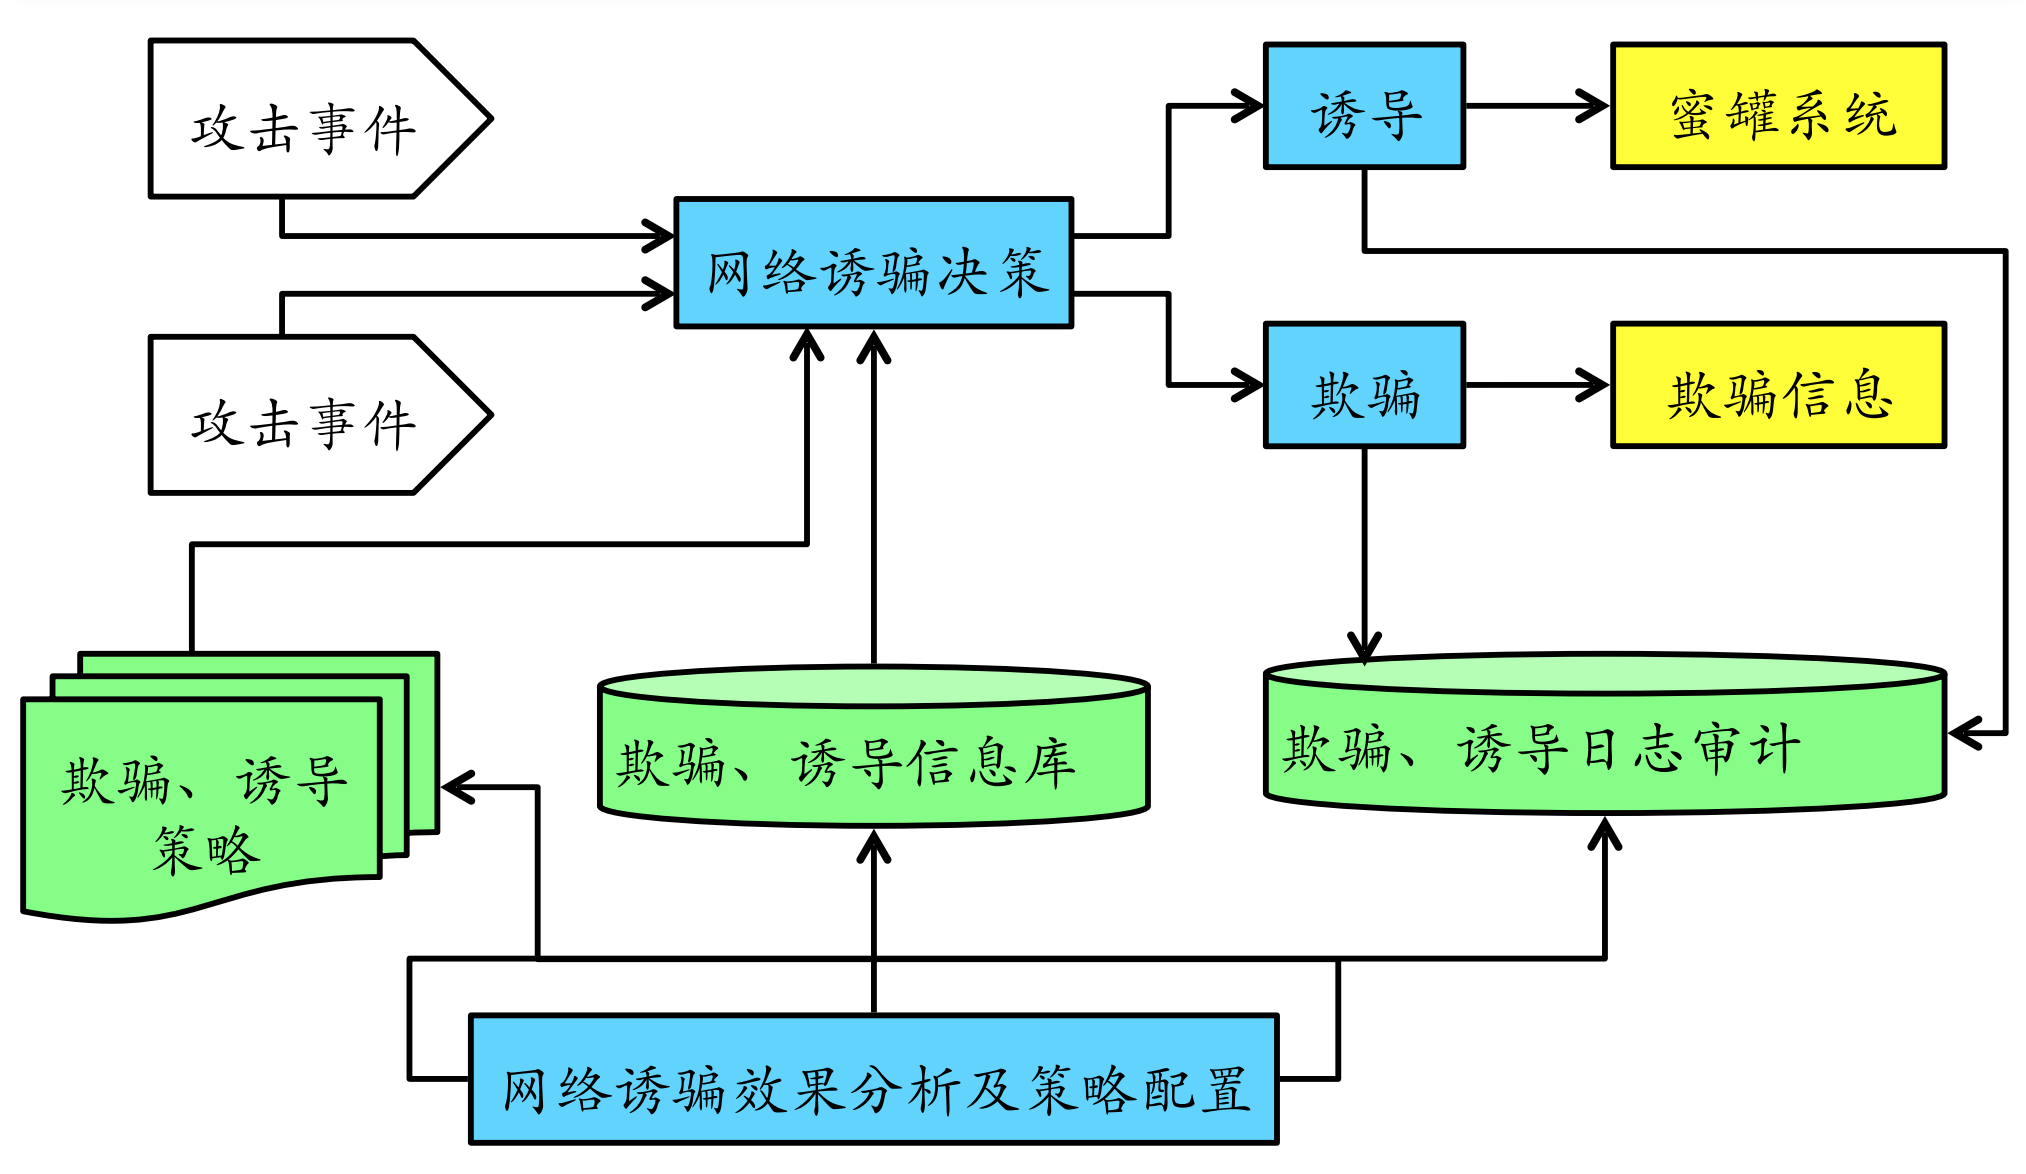 图 11-6 蜜罐基本体系架构图